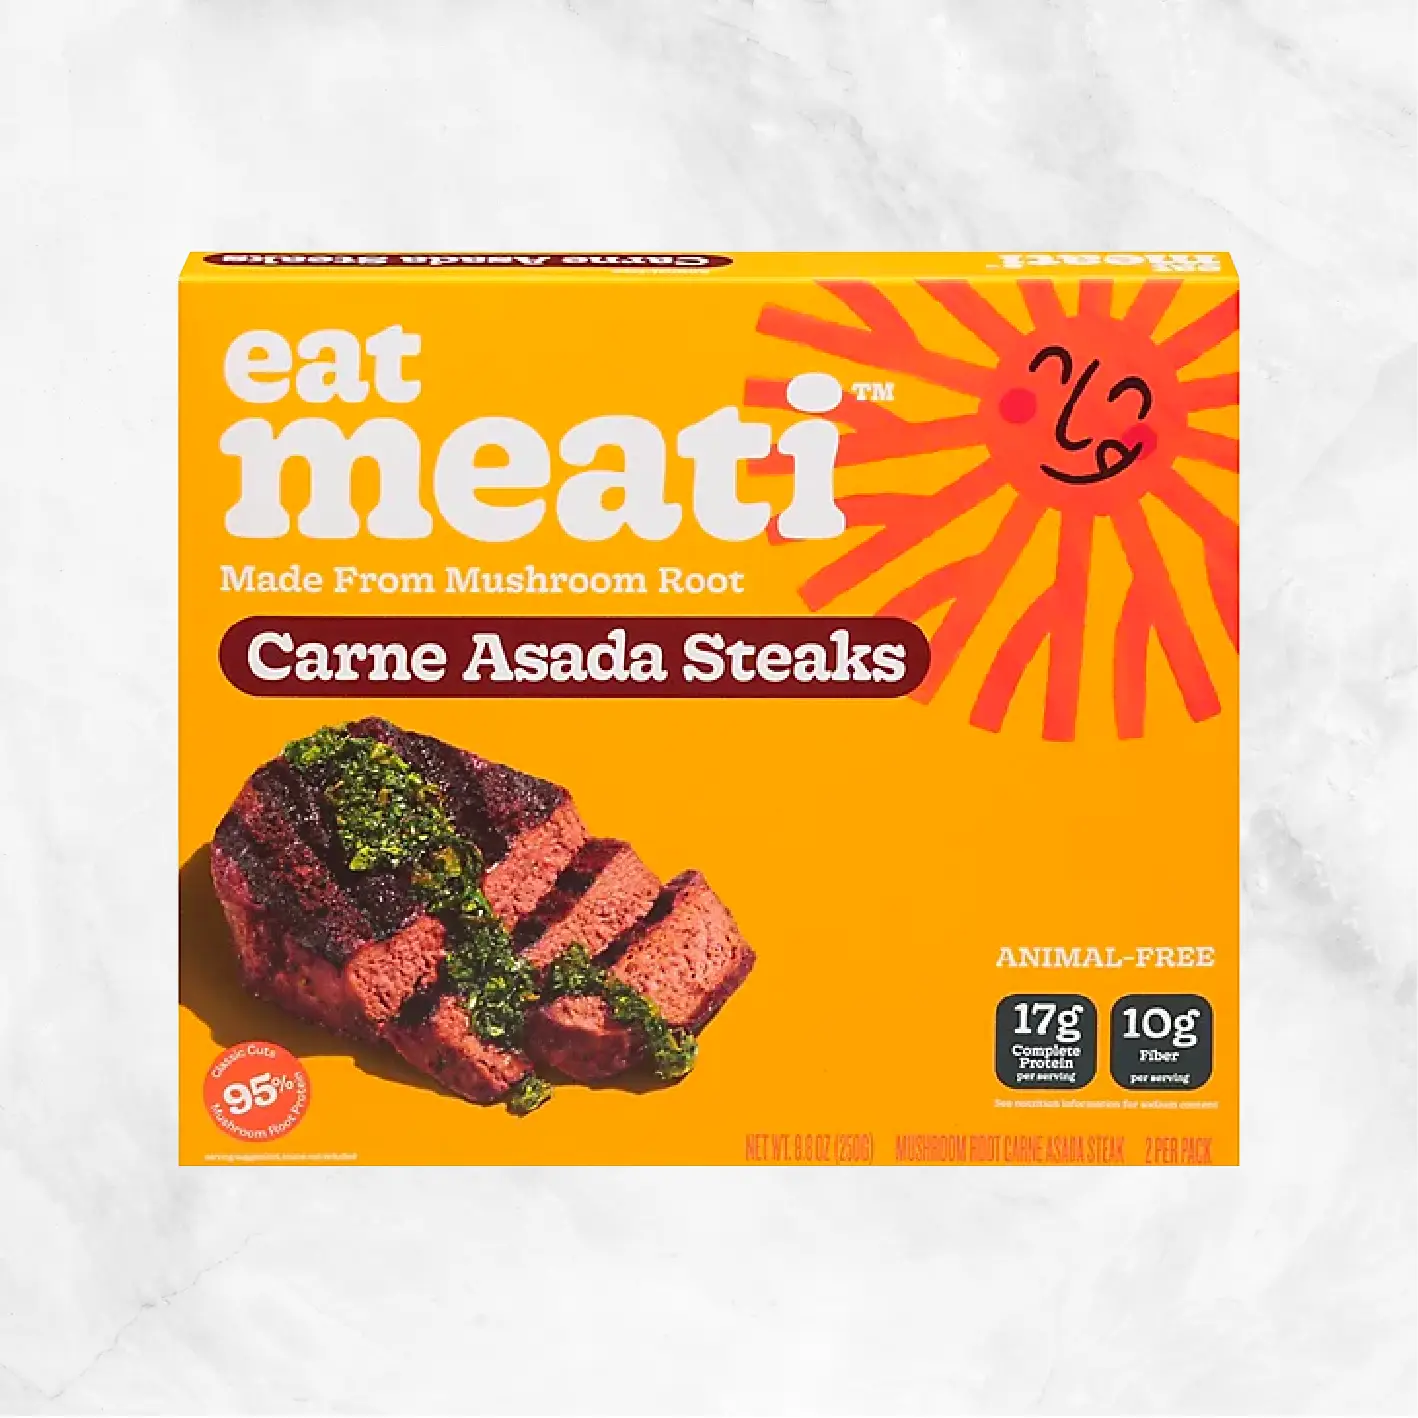 Steak Carne Asada Delivery